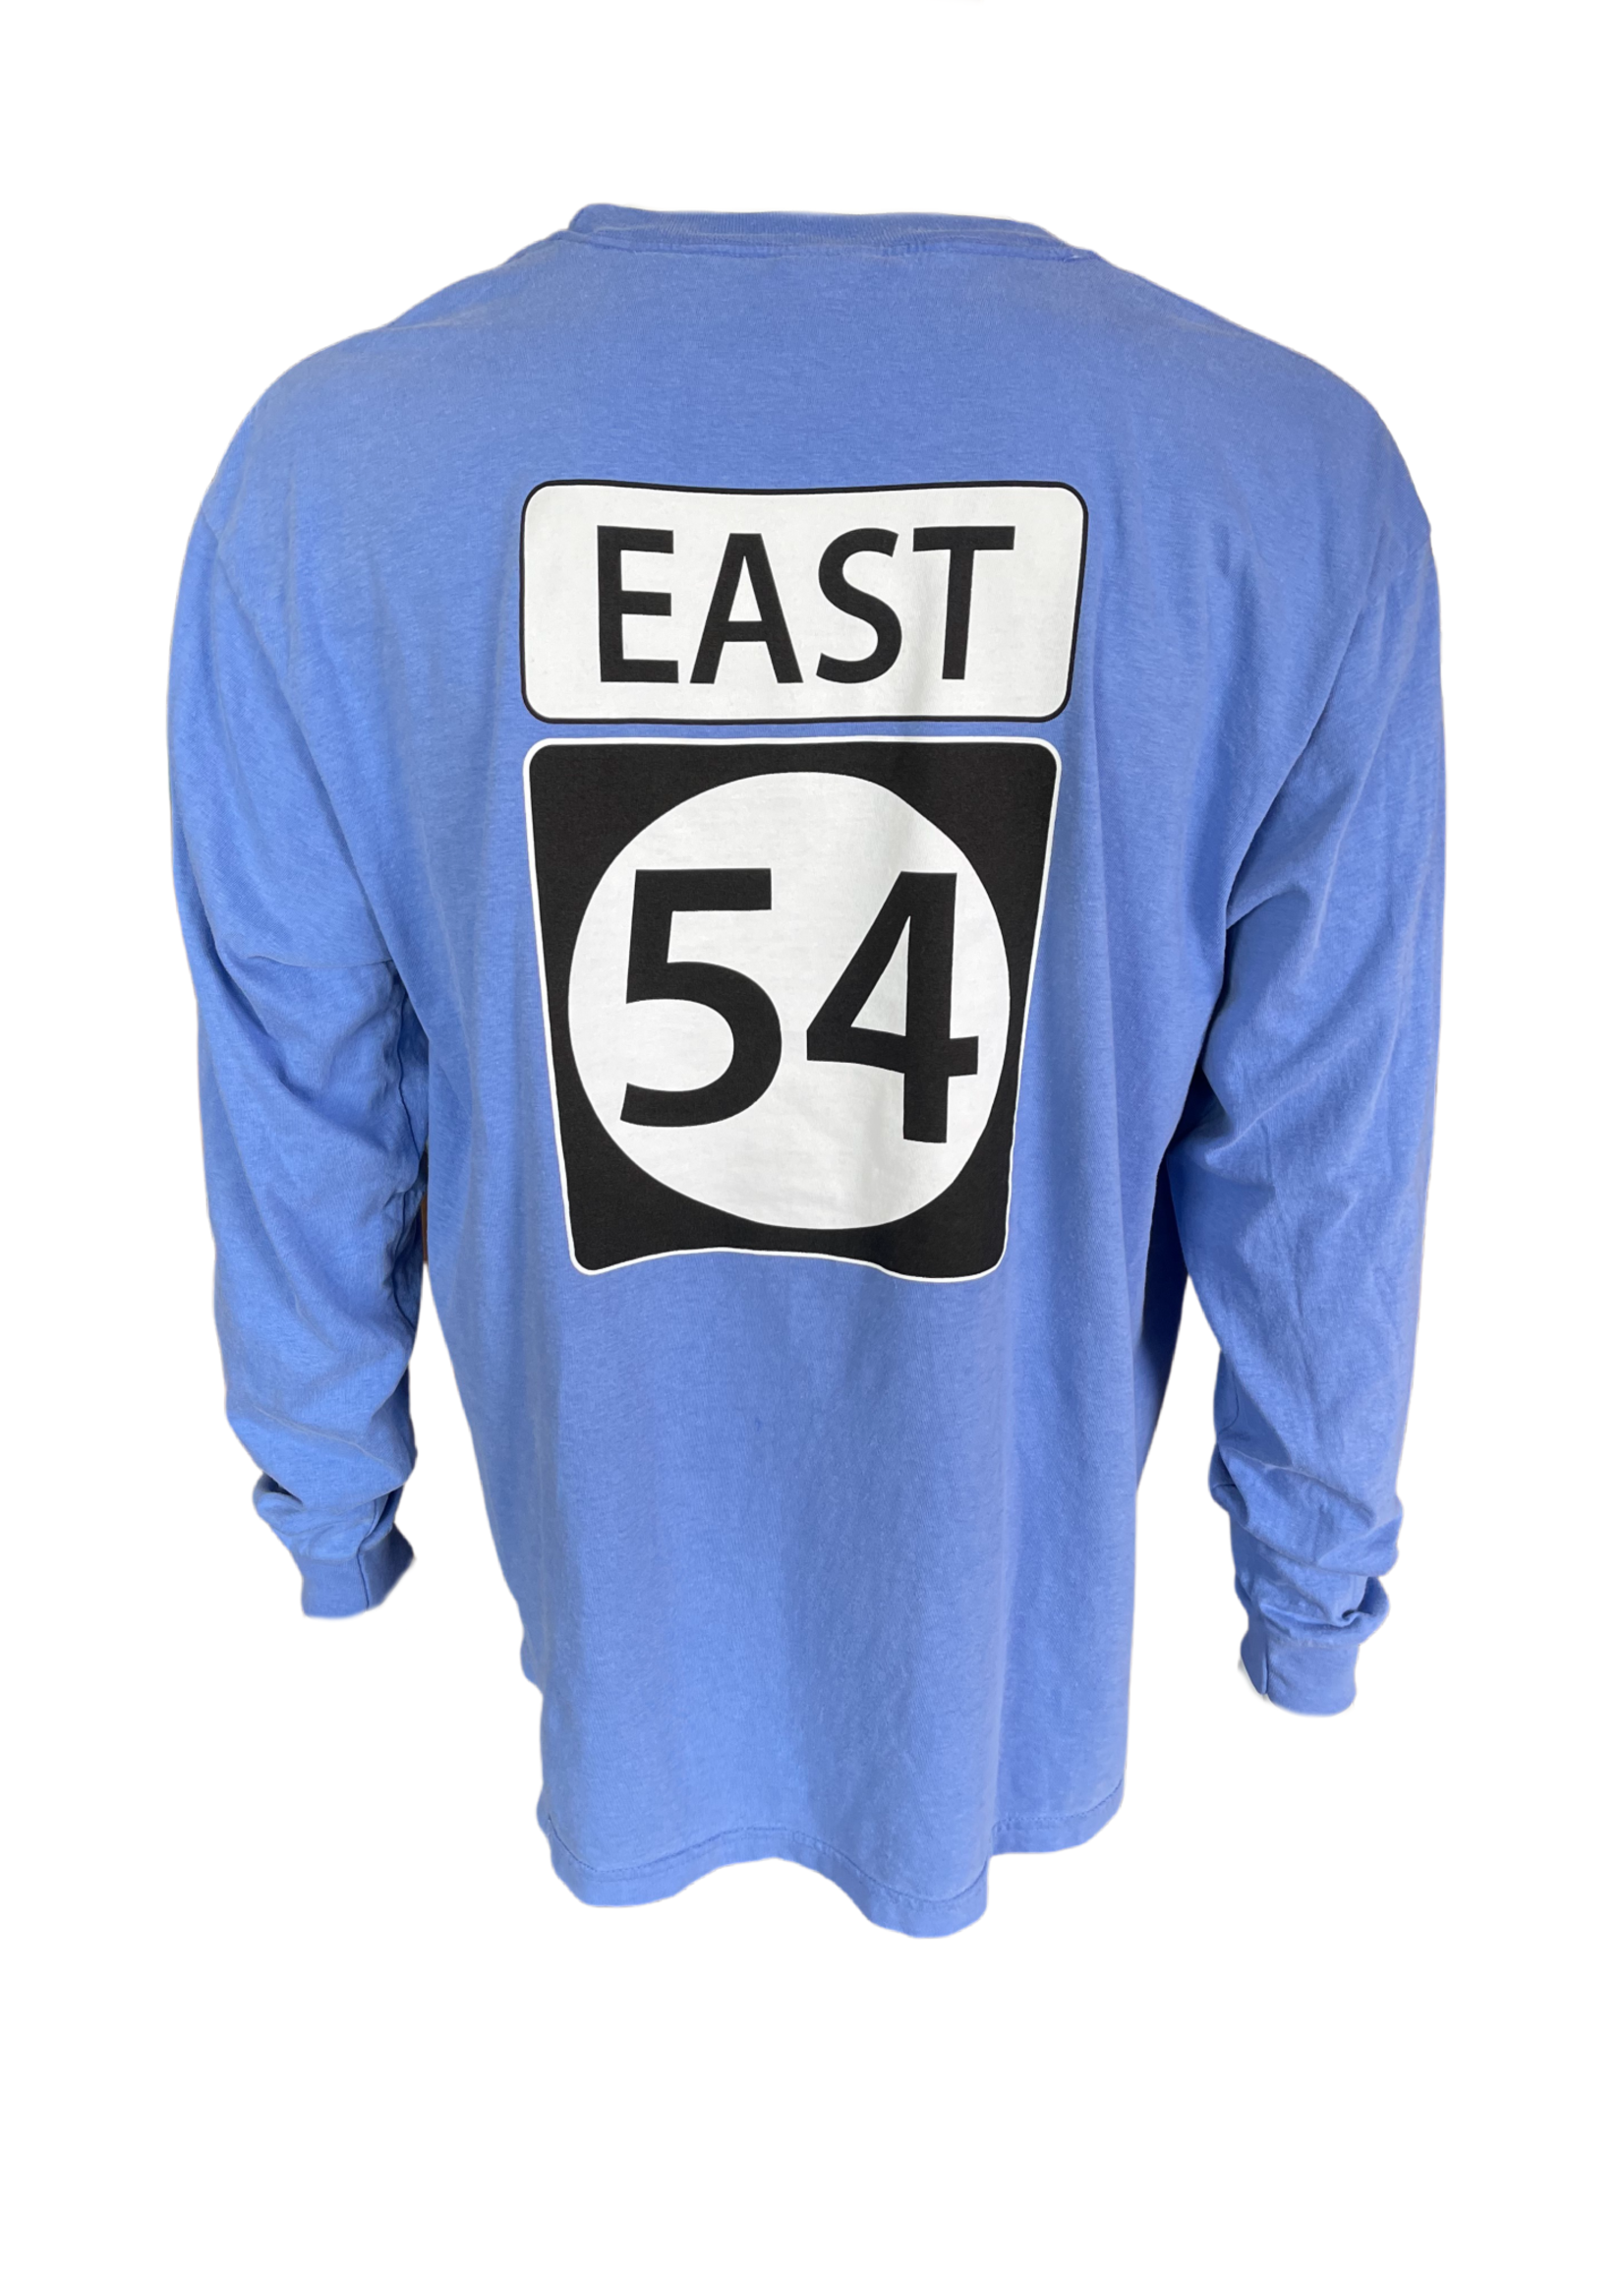 "EAST 54" COMFORT COLORS FLO BLUE